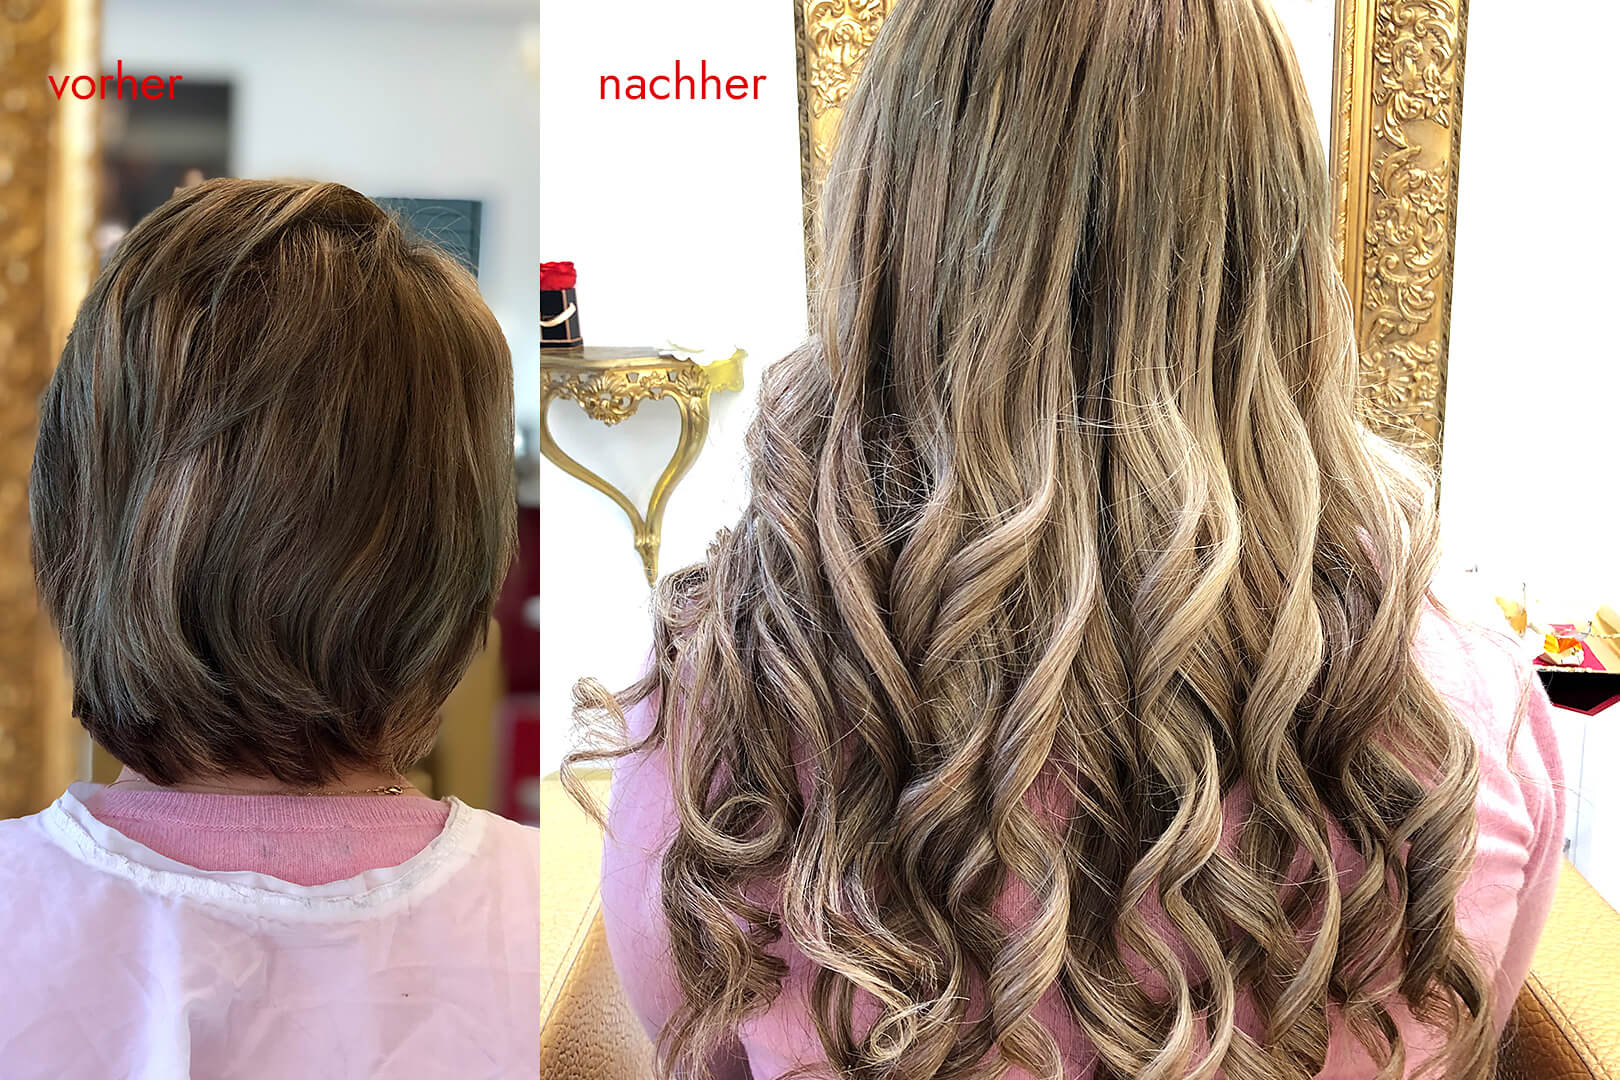 Angelicas Hair Extensions: Kundin vorher und nachher mit Haarverlängerung